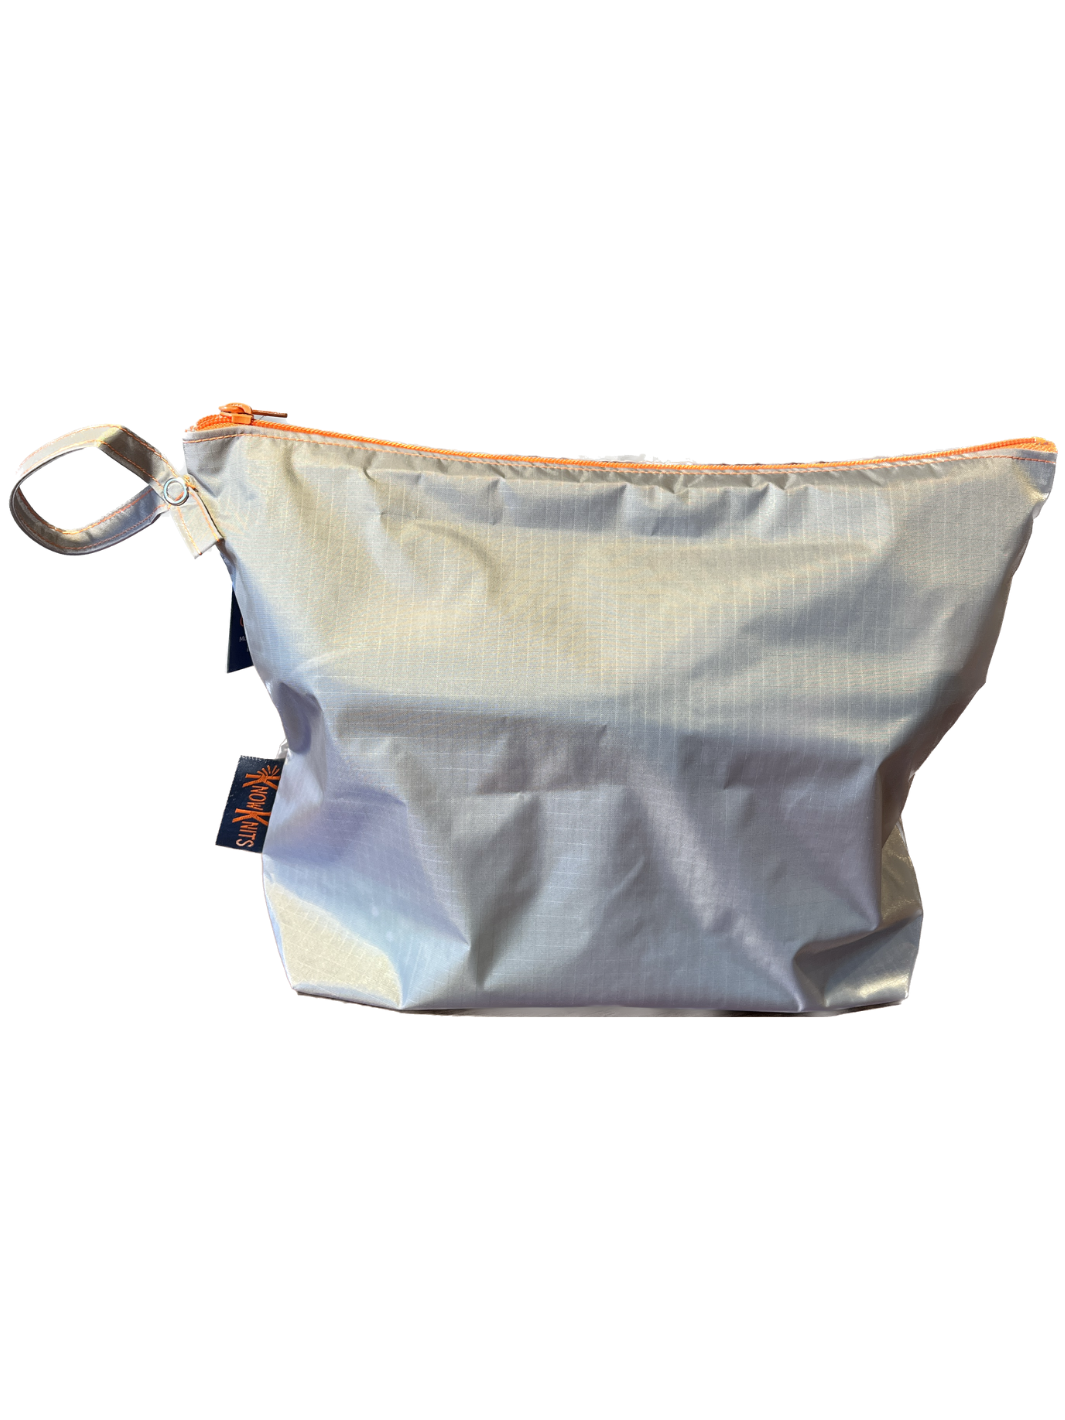 Area Code NATURAL Canvas Zipper Bag - 860